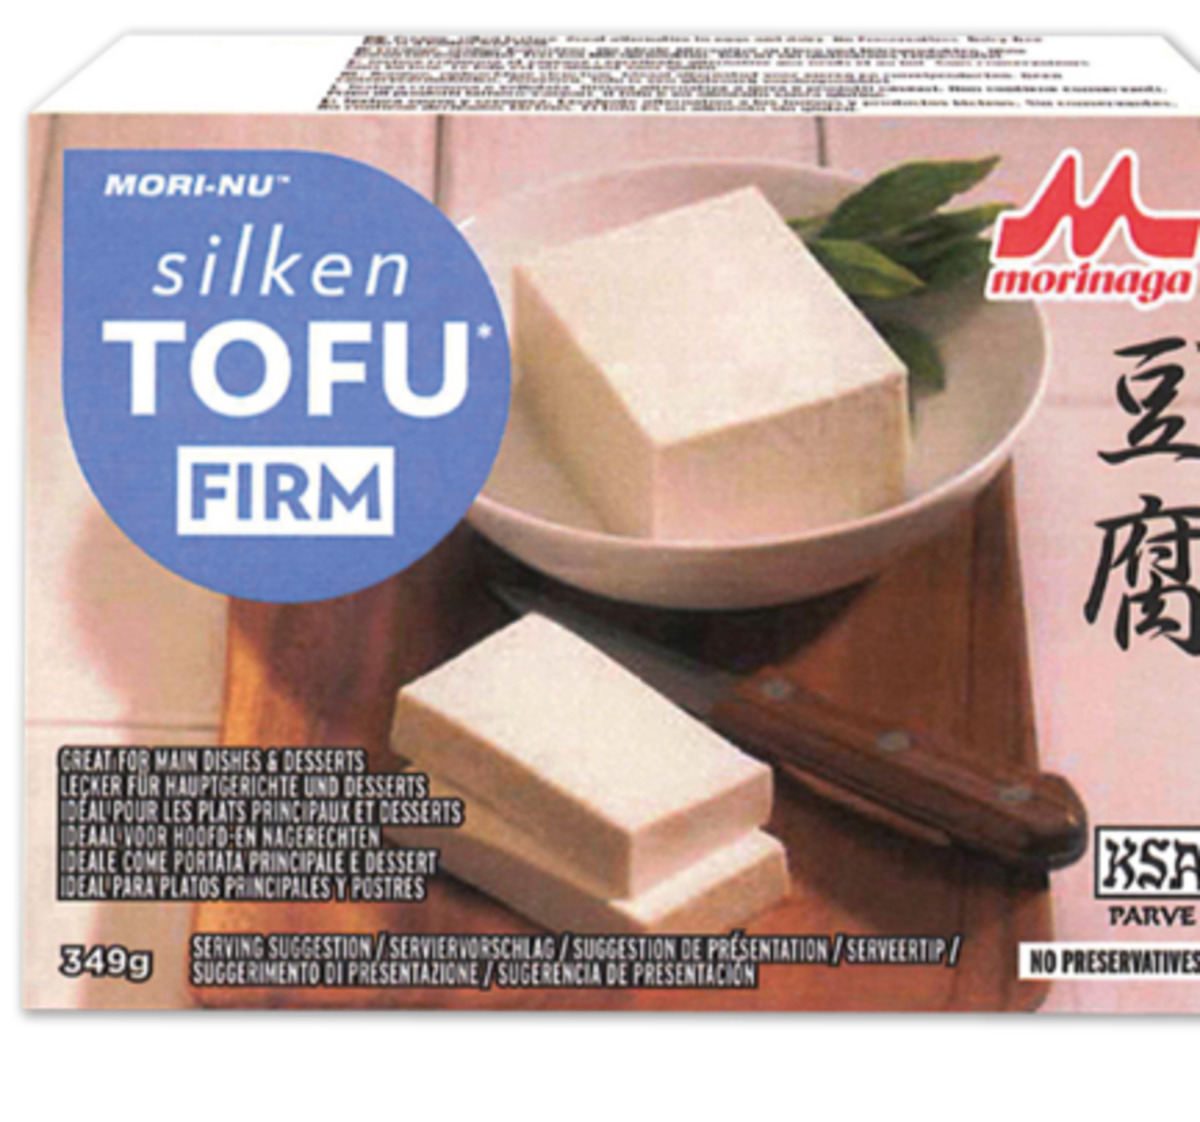 MORI-NU Tofu von Penny Markt ansehen!